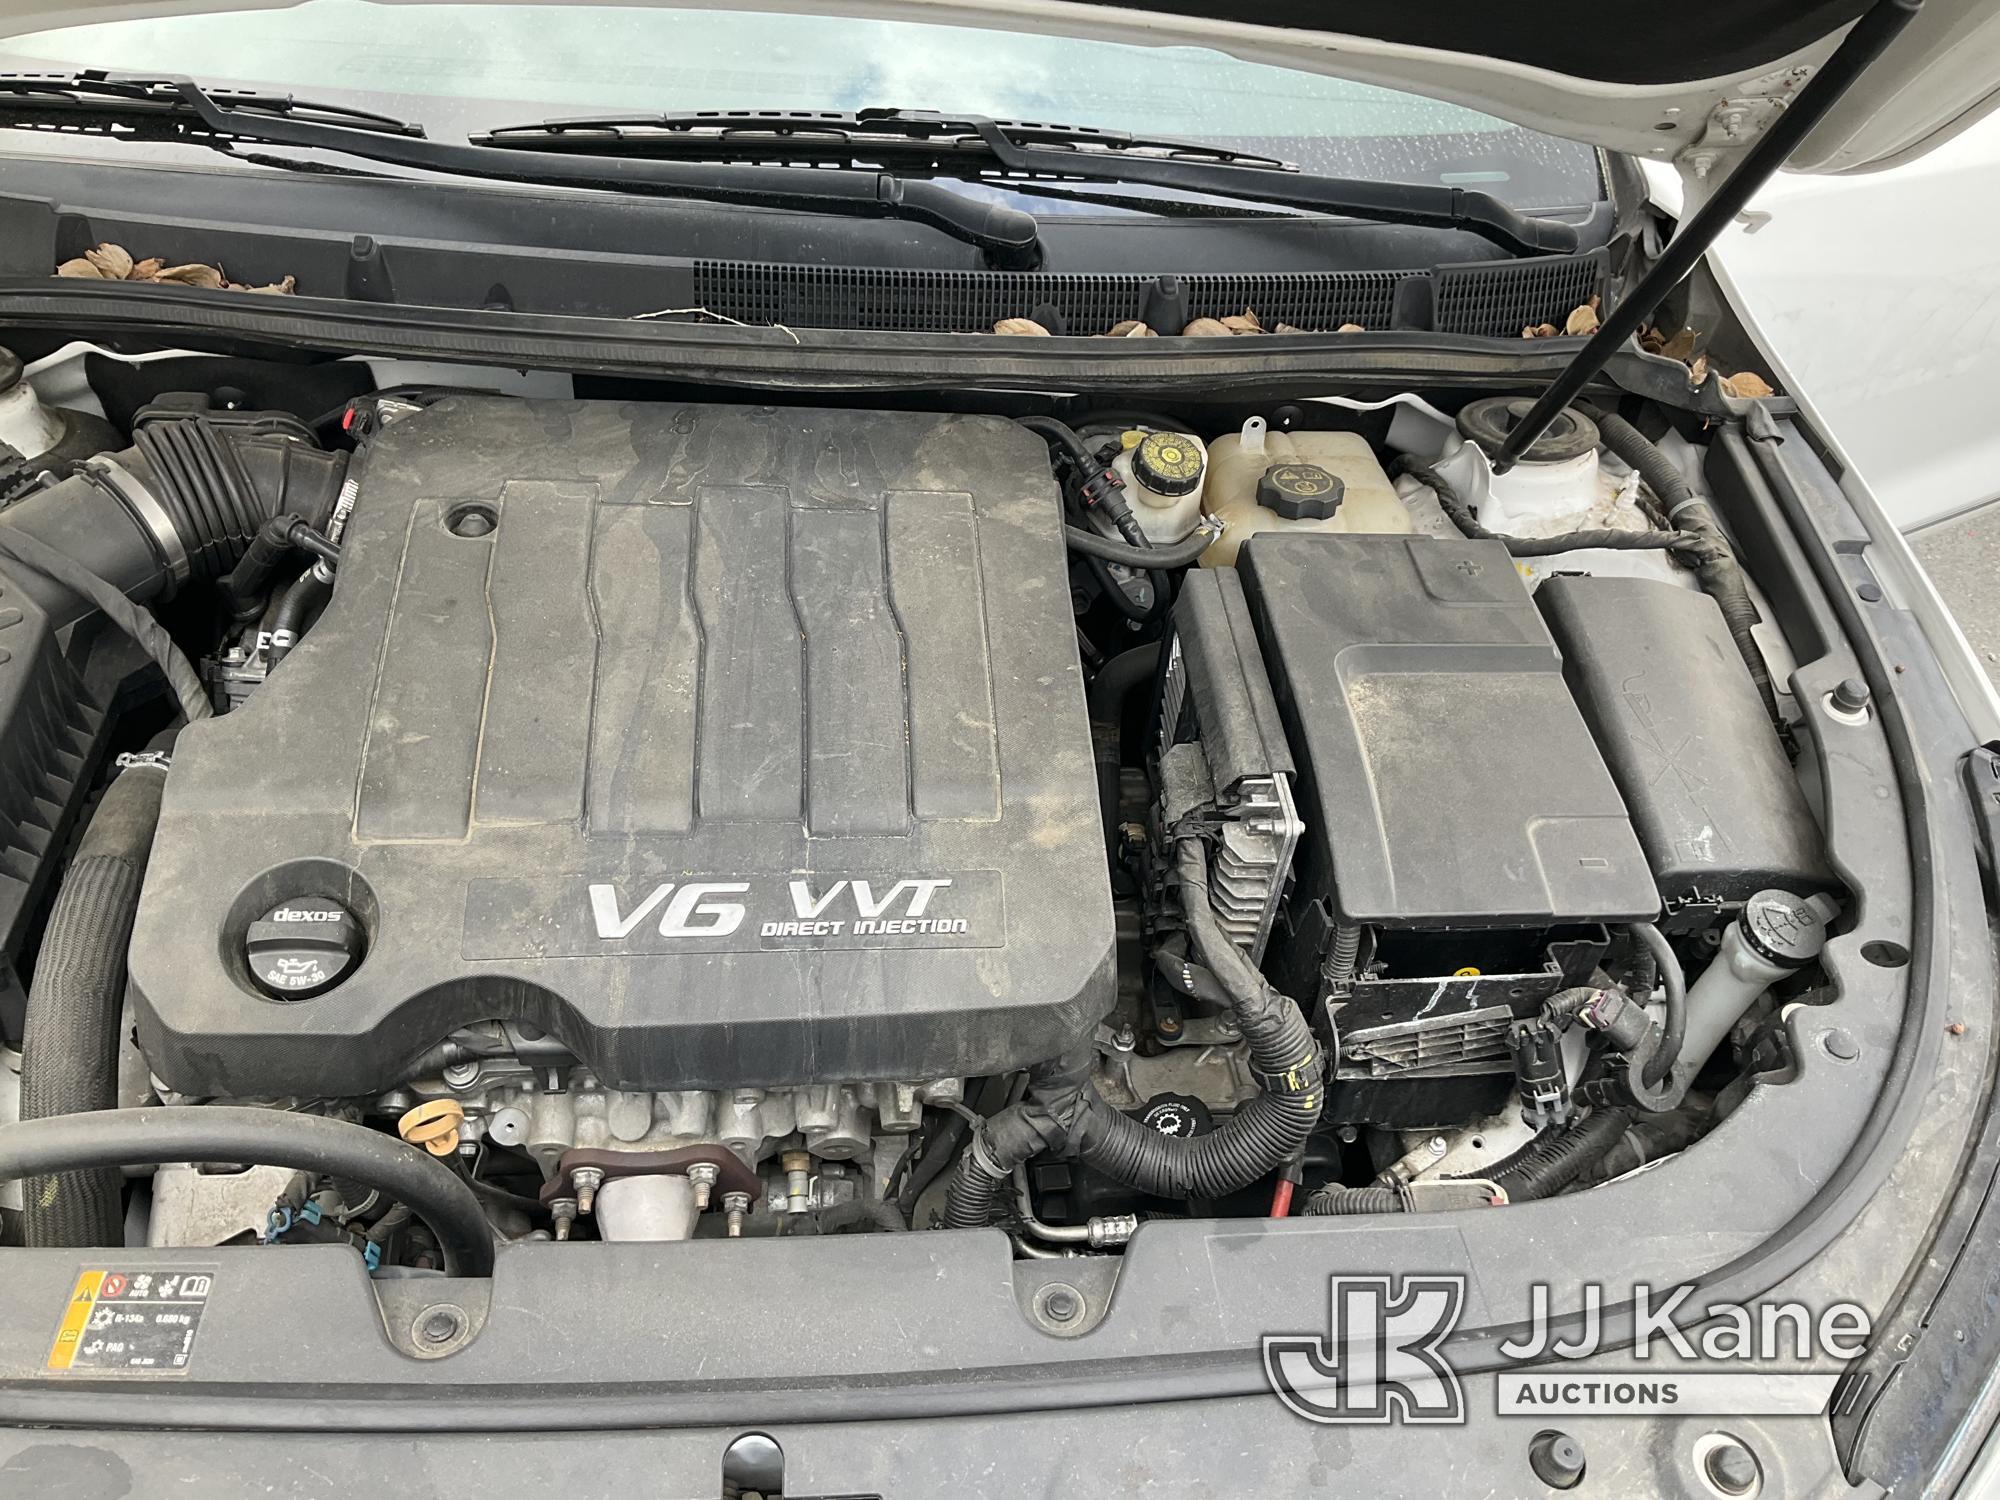 (Jurupa Valley, CA) 2016 Buick LaCrosse 4-Door Sedan Runs & Moves, Failed Smog, Torn Pcv Boot